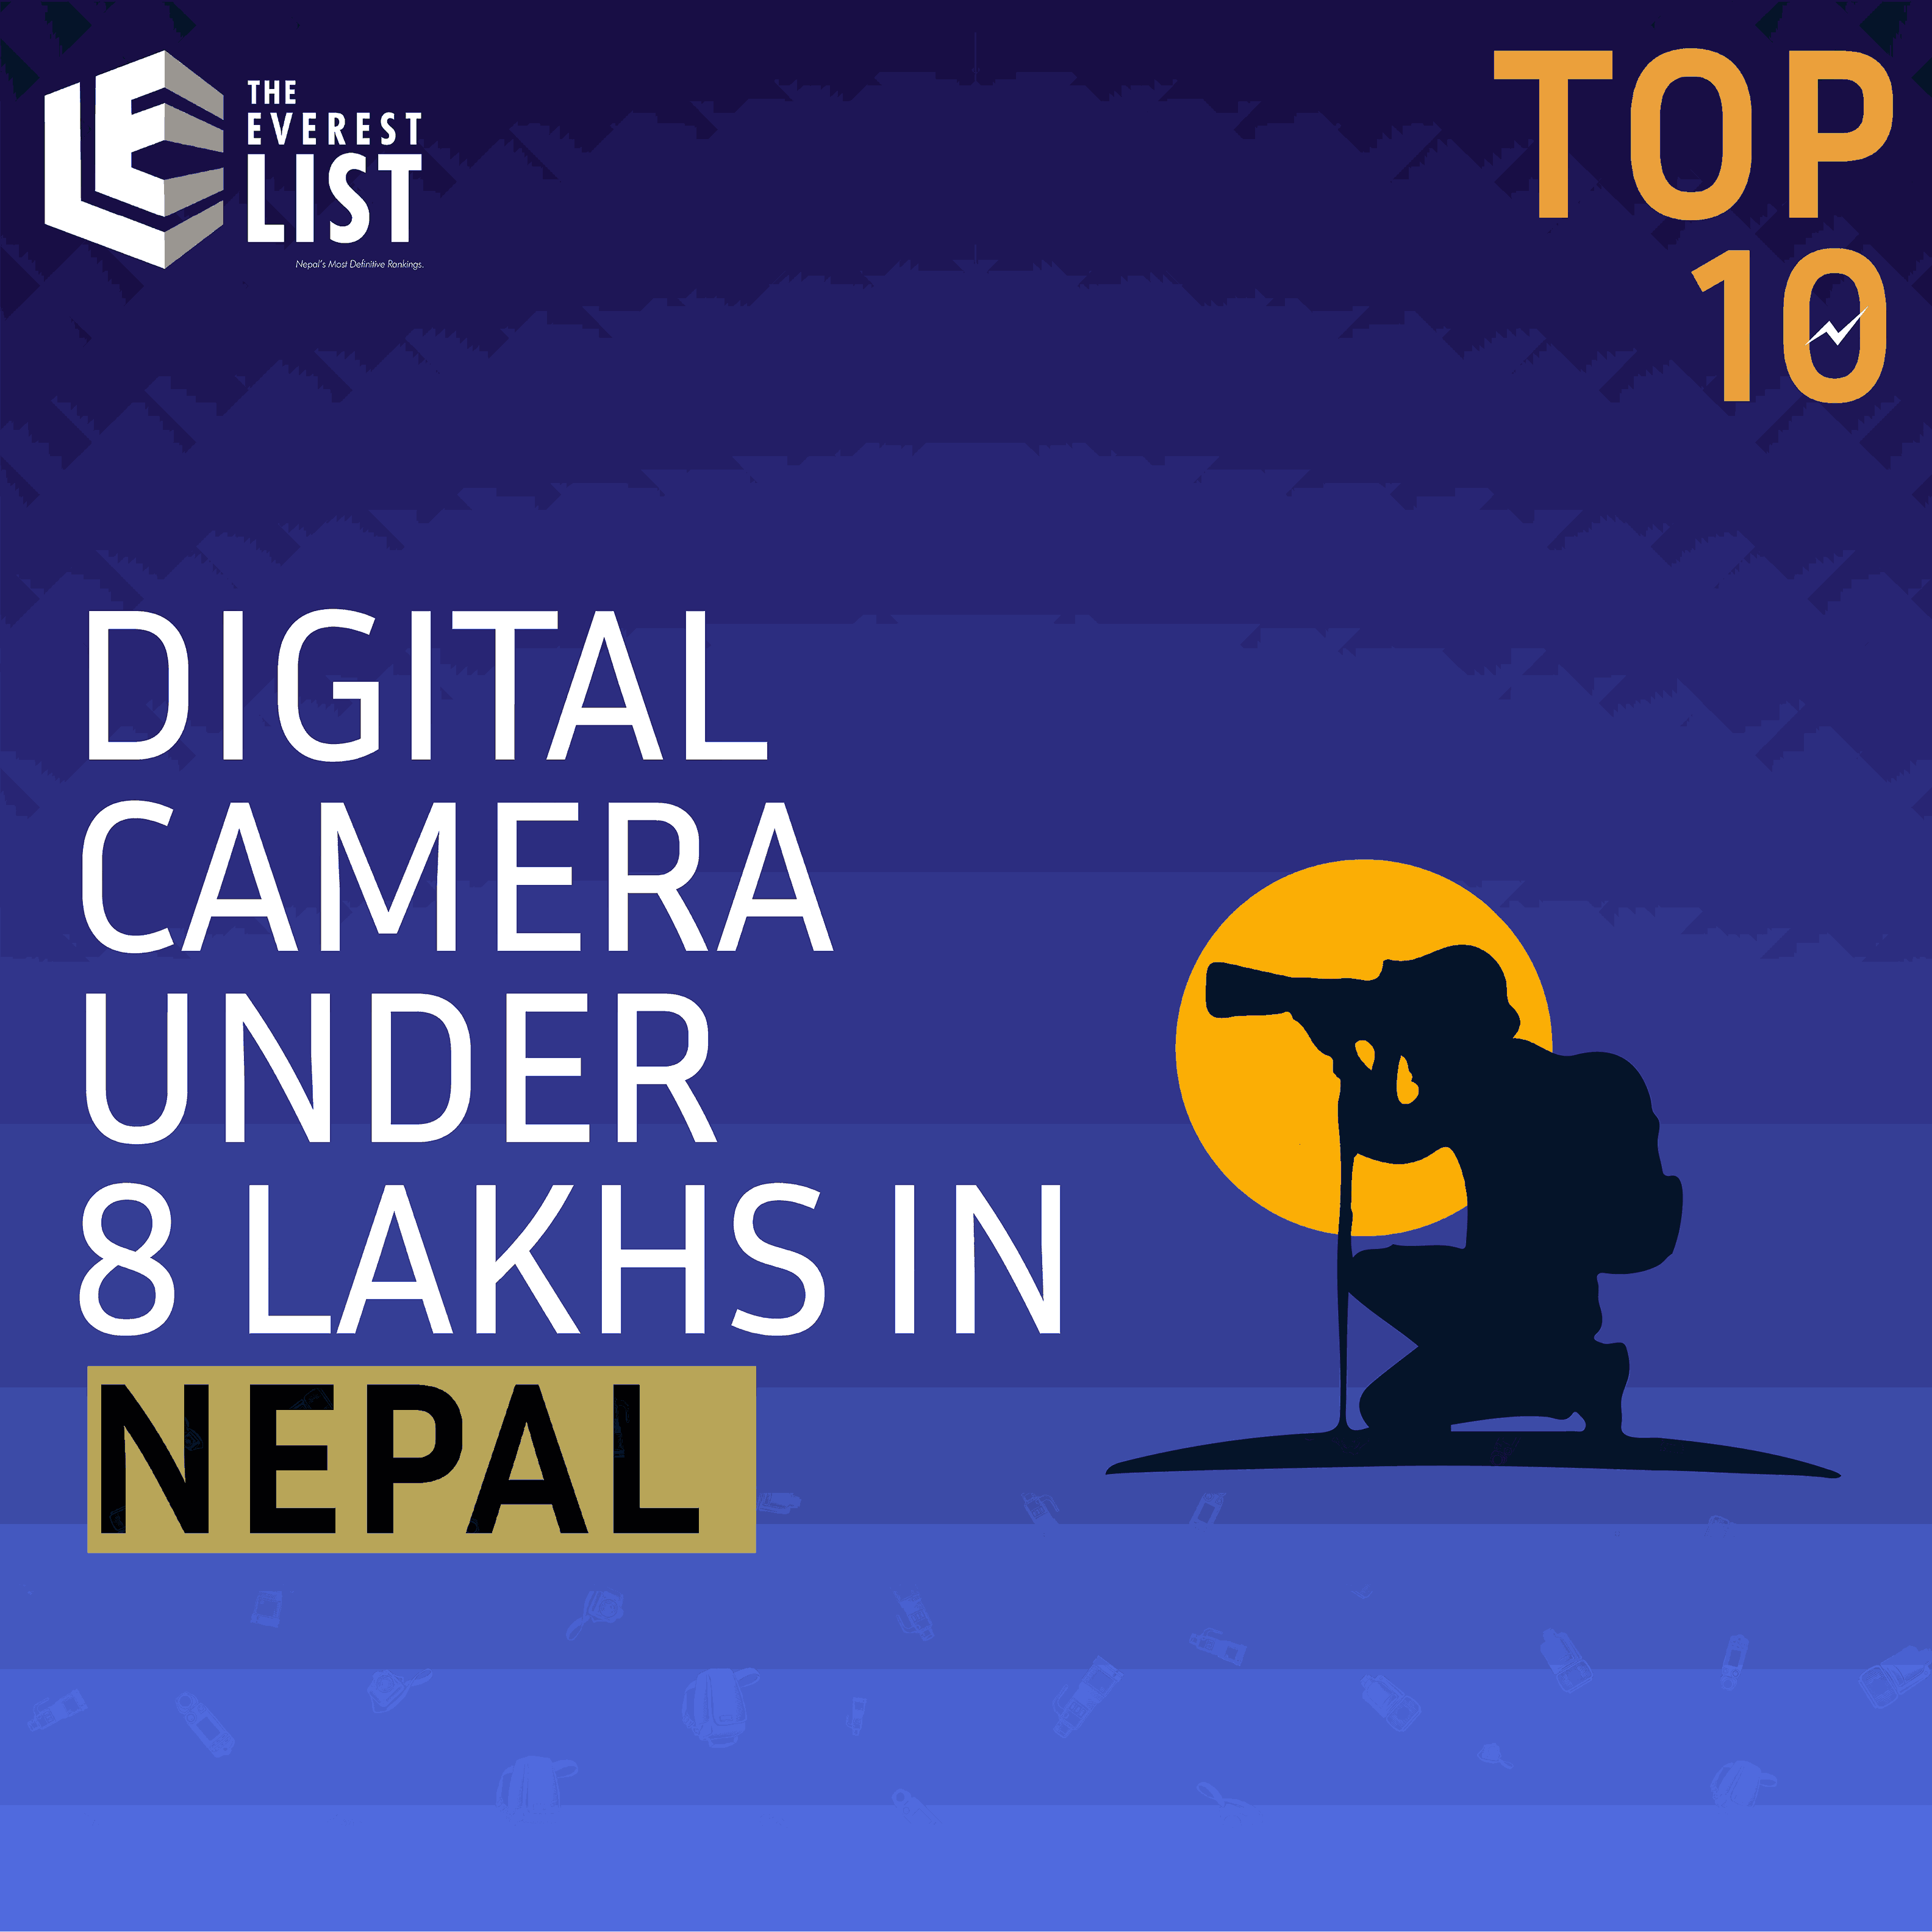 Top 10 Digital Cameras under 8 Lakhs in Nepal